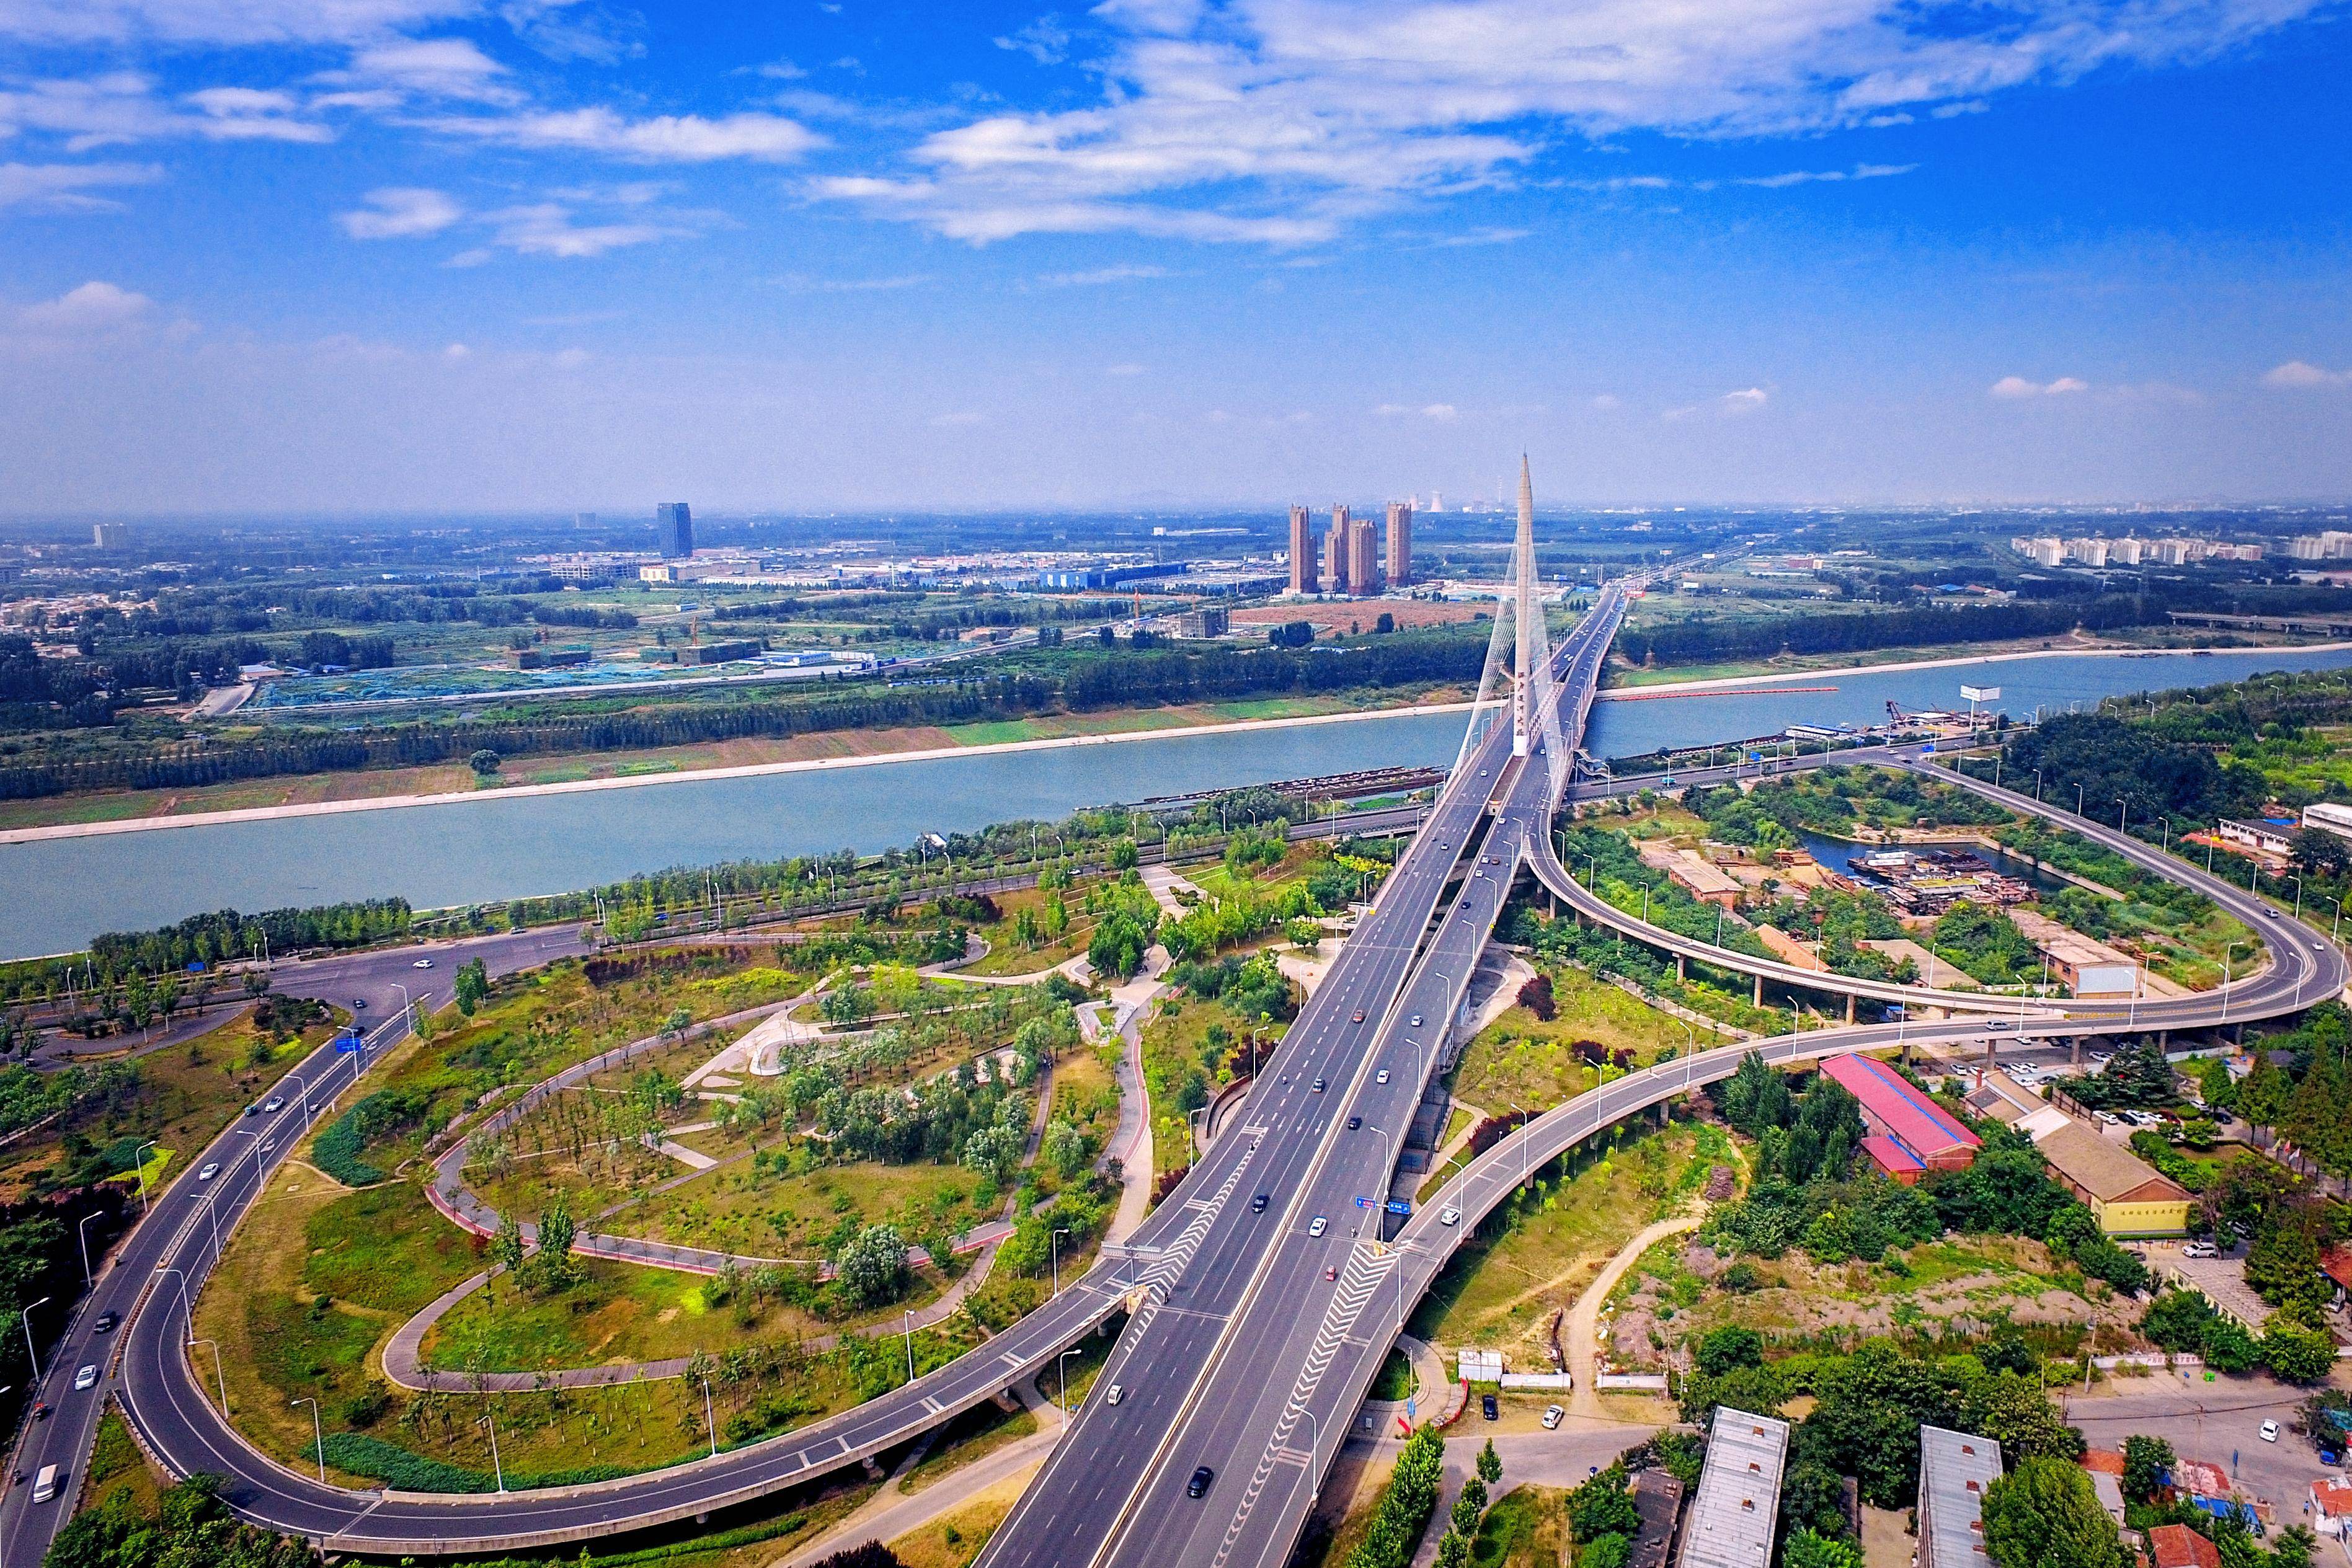 去年年底41公里的内环高架快速路主线通车,标志着济宁迈入立体交通新